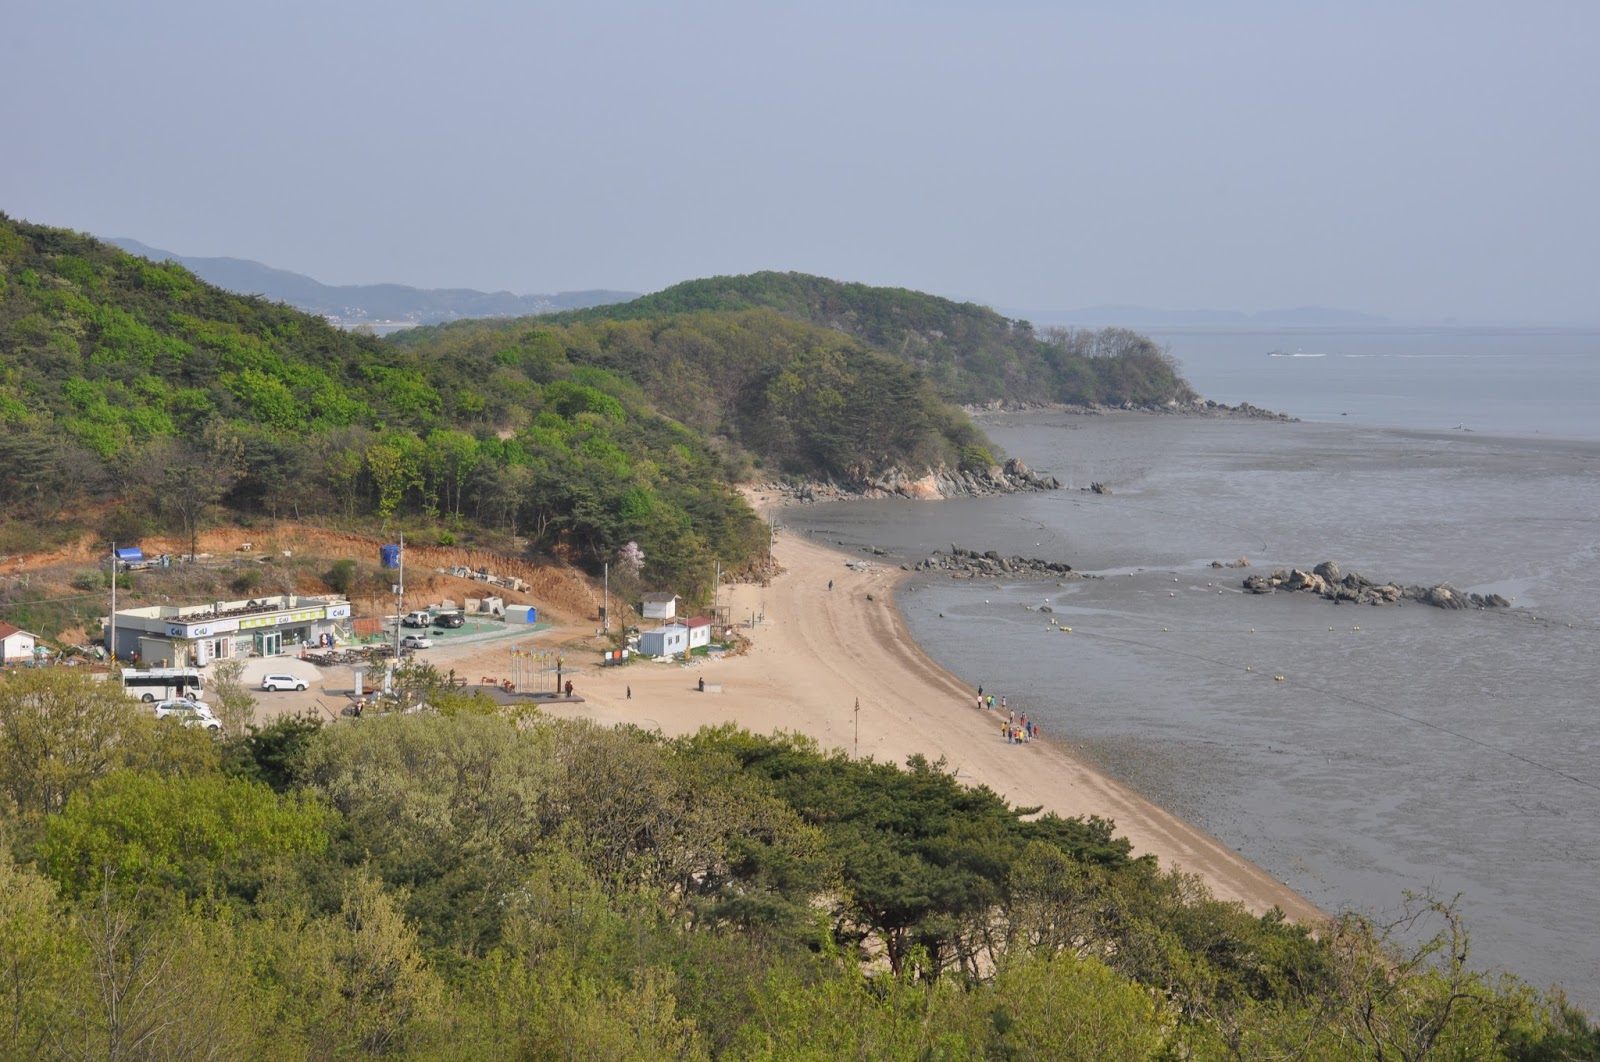 Foto de Minmeoru Beach com praia espaçosa